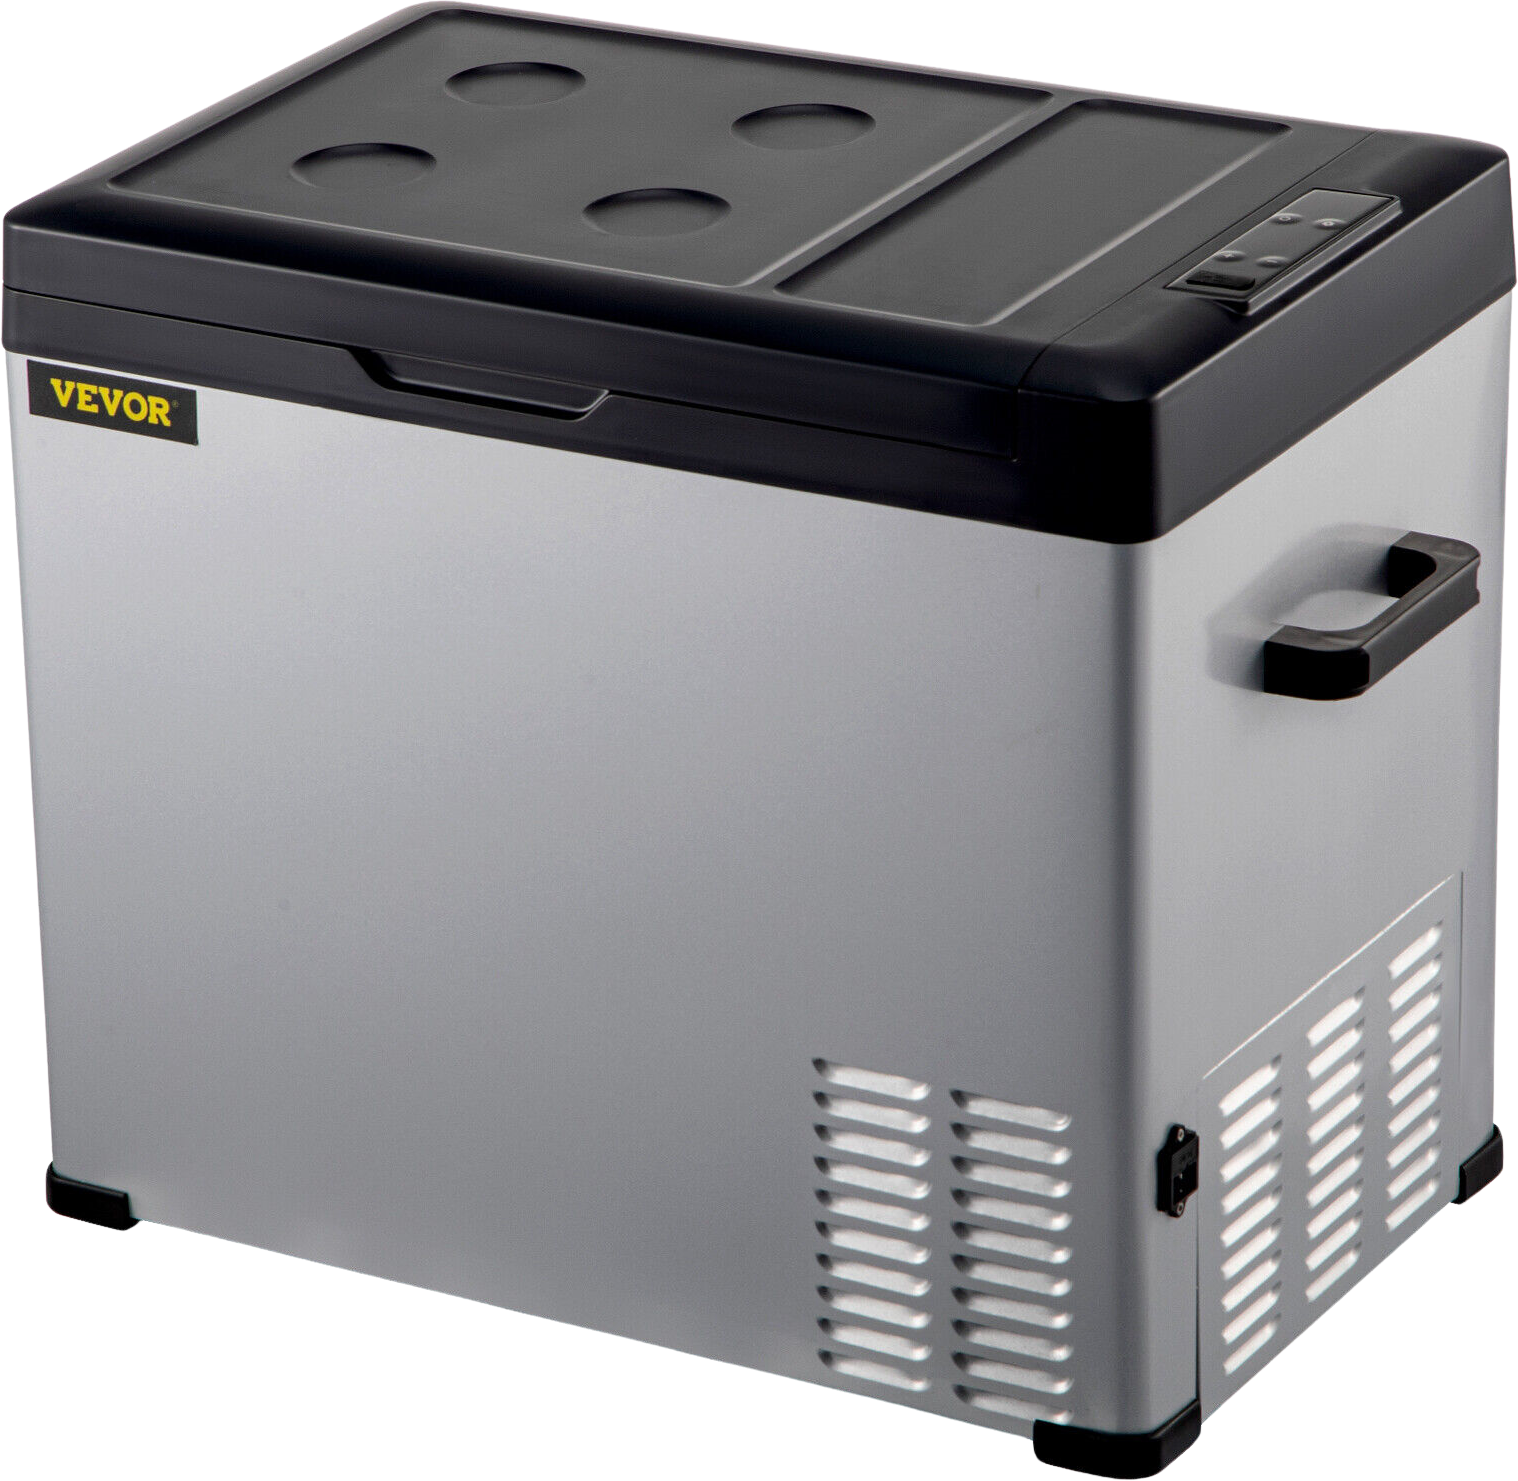 Vevor C40 Portable Compressor Refrigerator 42 Quart 12V/24V DC And 110-220V AC With App Control New